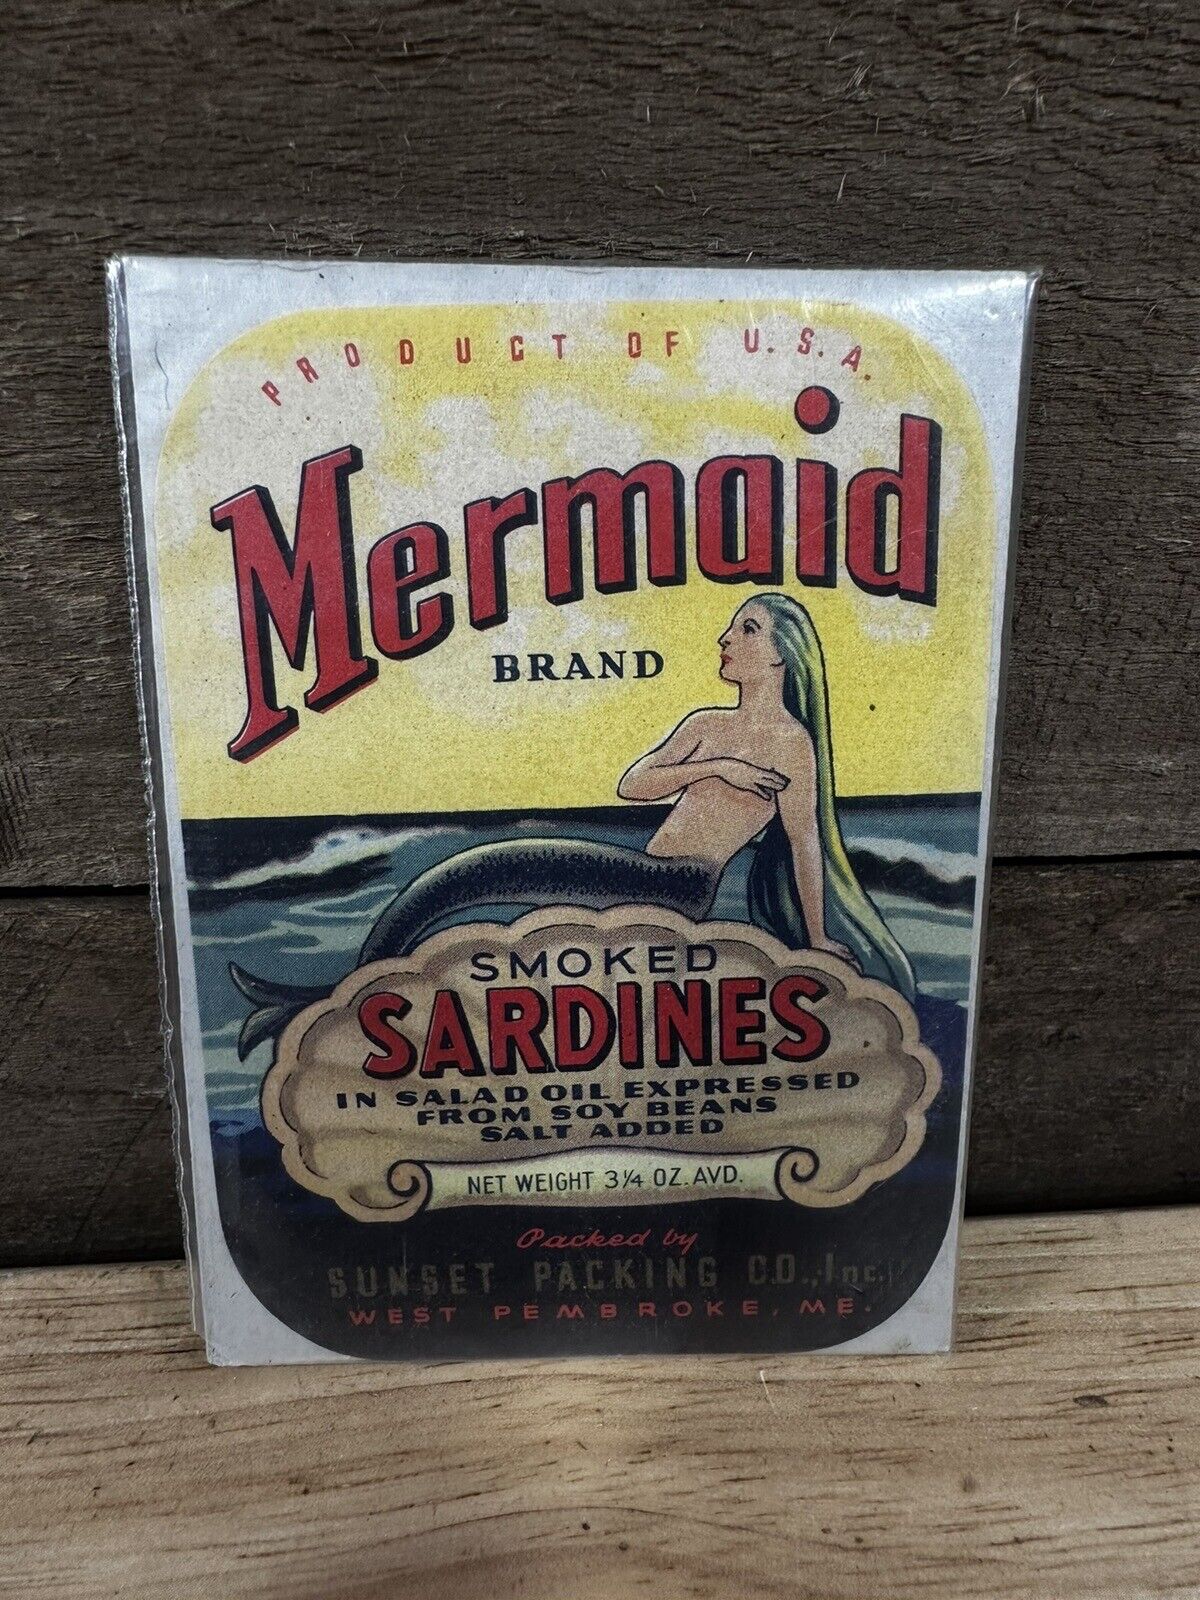 Vintage Mermaid Brand “Smoked Sardines” Advertising Print